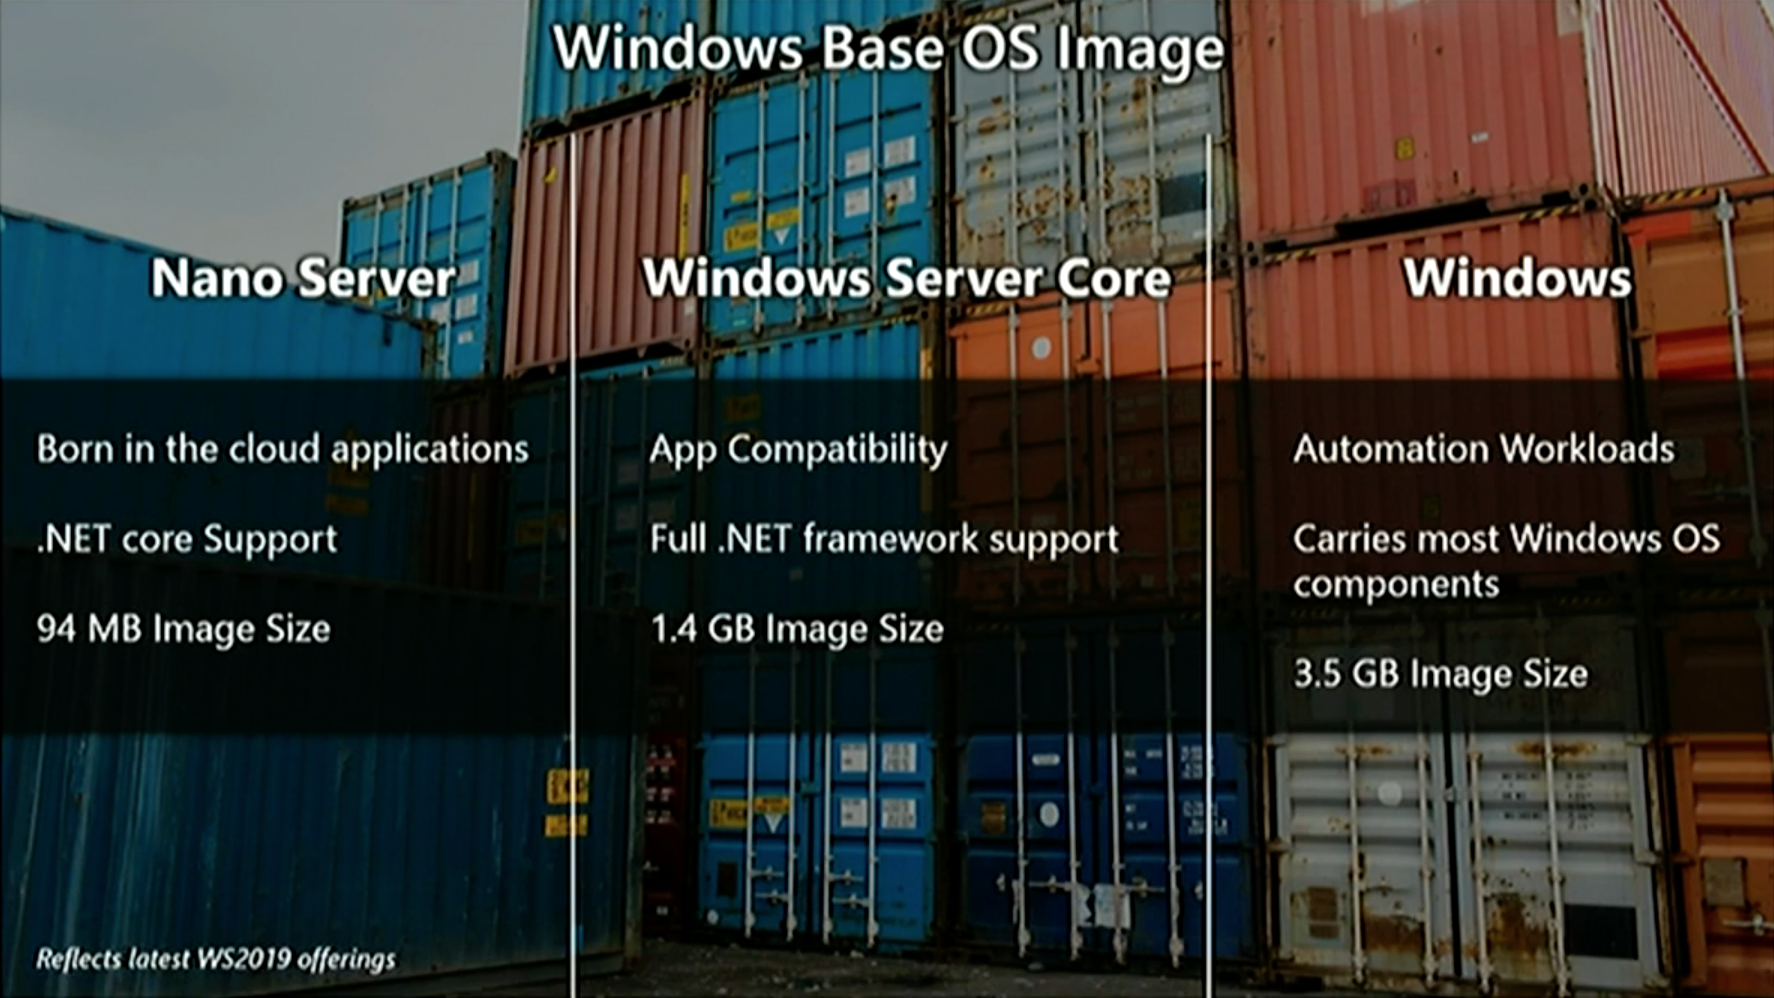 Three Windows base OS images